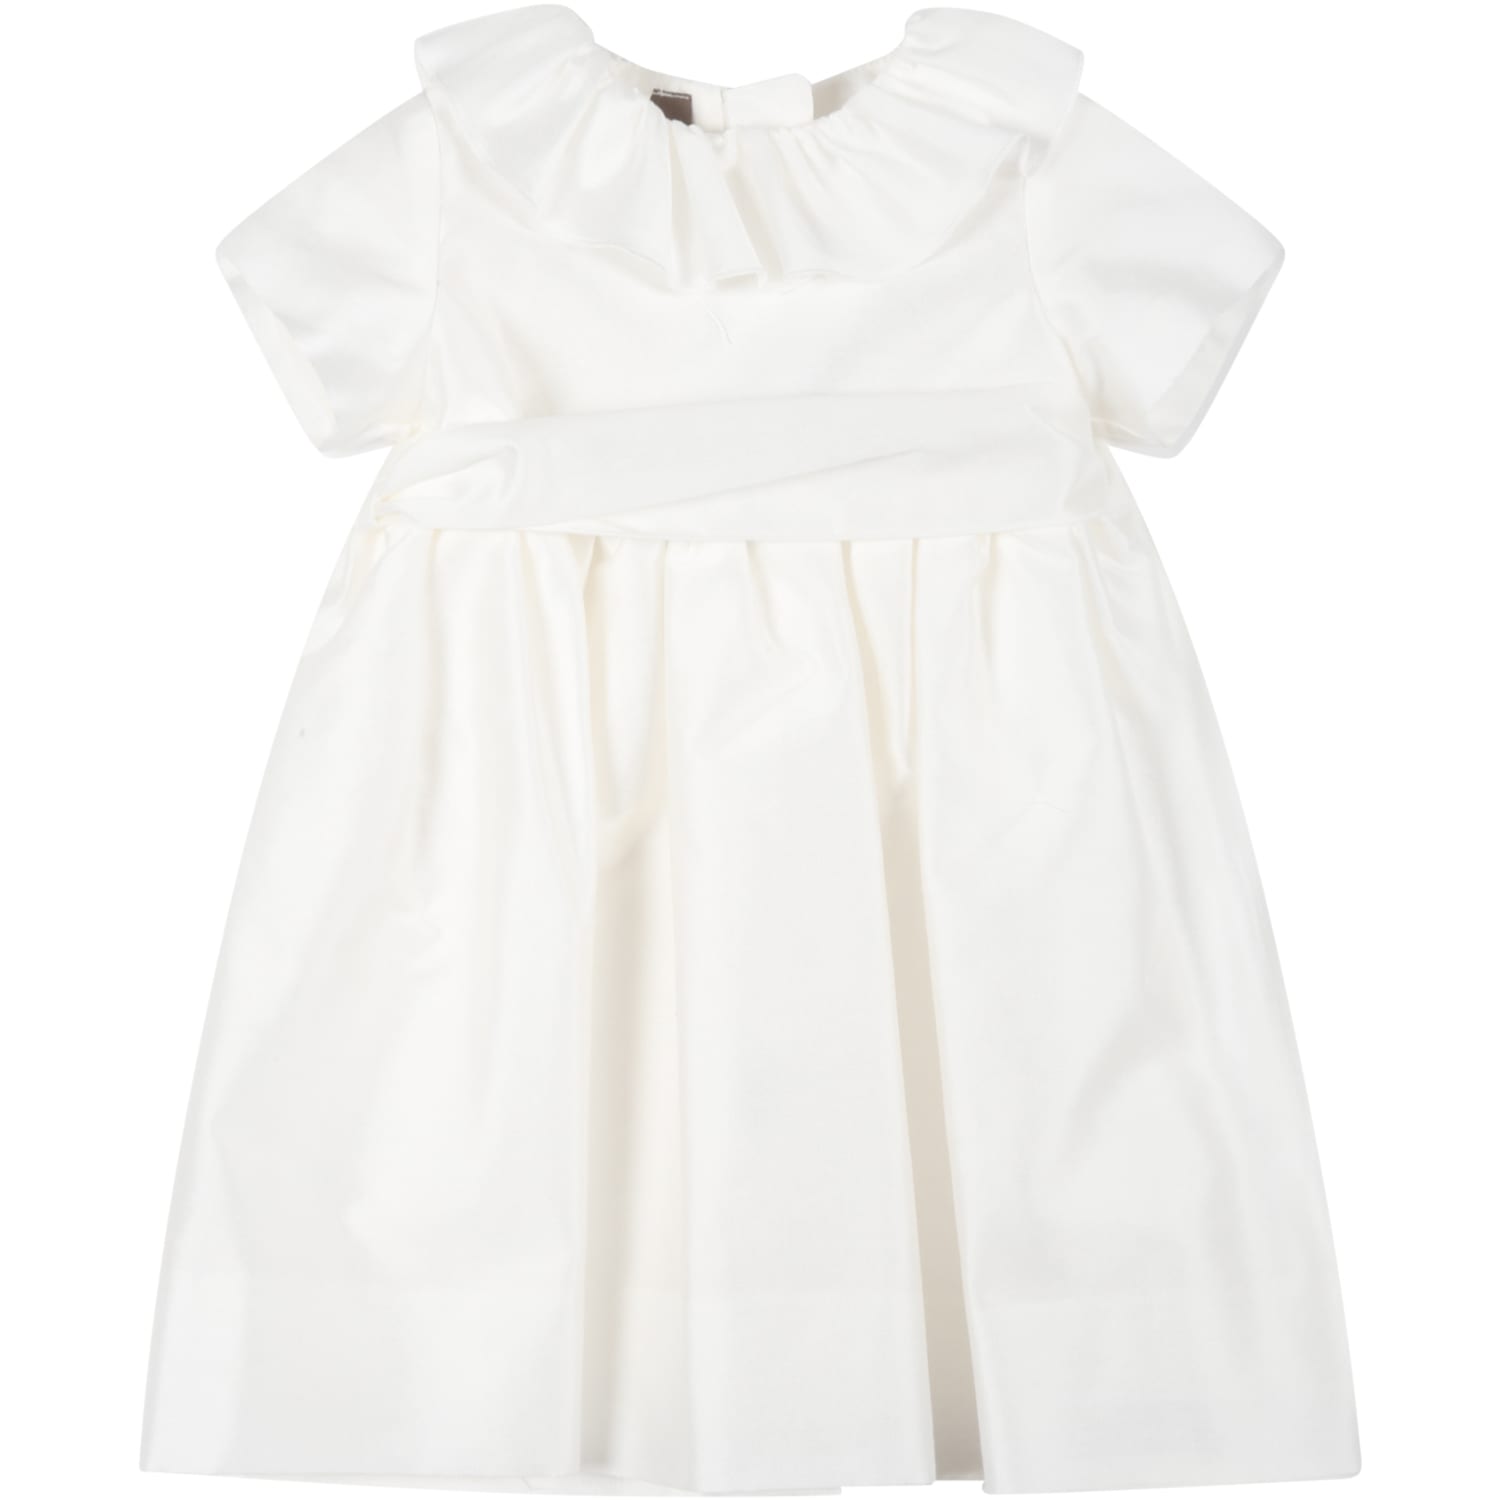 LITTLE BEAR WHITE DRESS FOR BABY GIRL